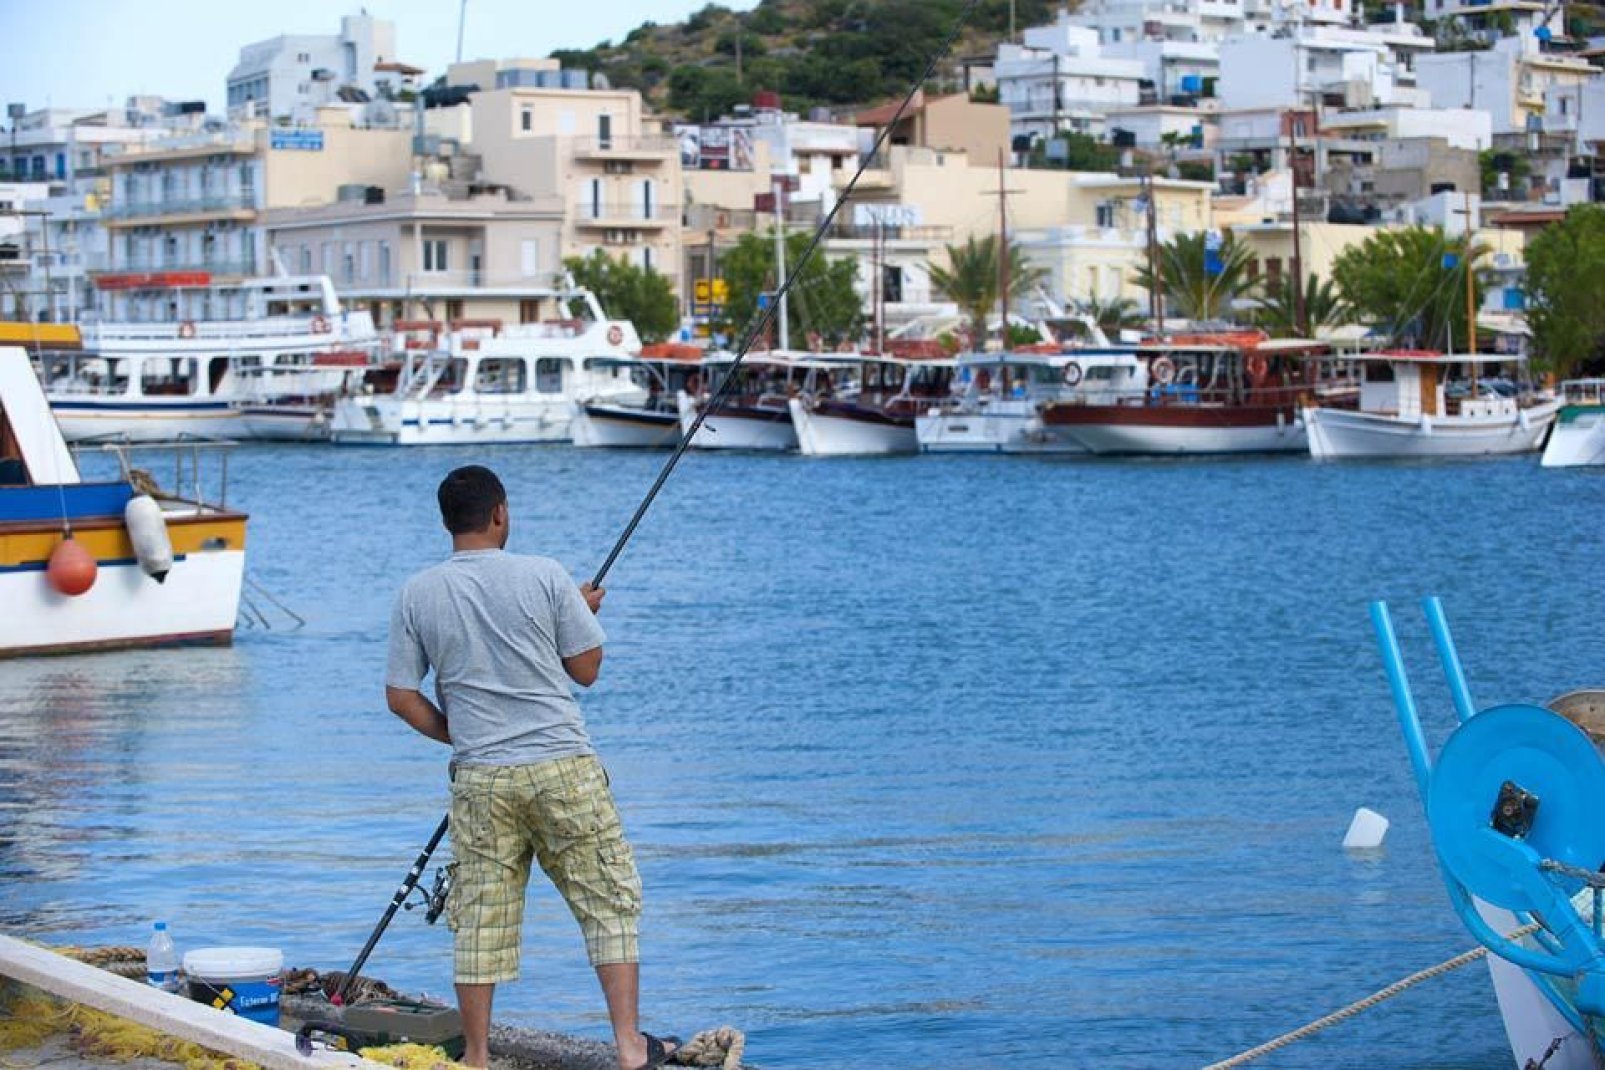 El pueblecito ha conservado su actividad tradicional y sus barcos de pesca de color en el puerto.